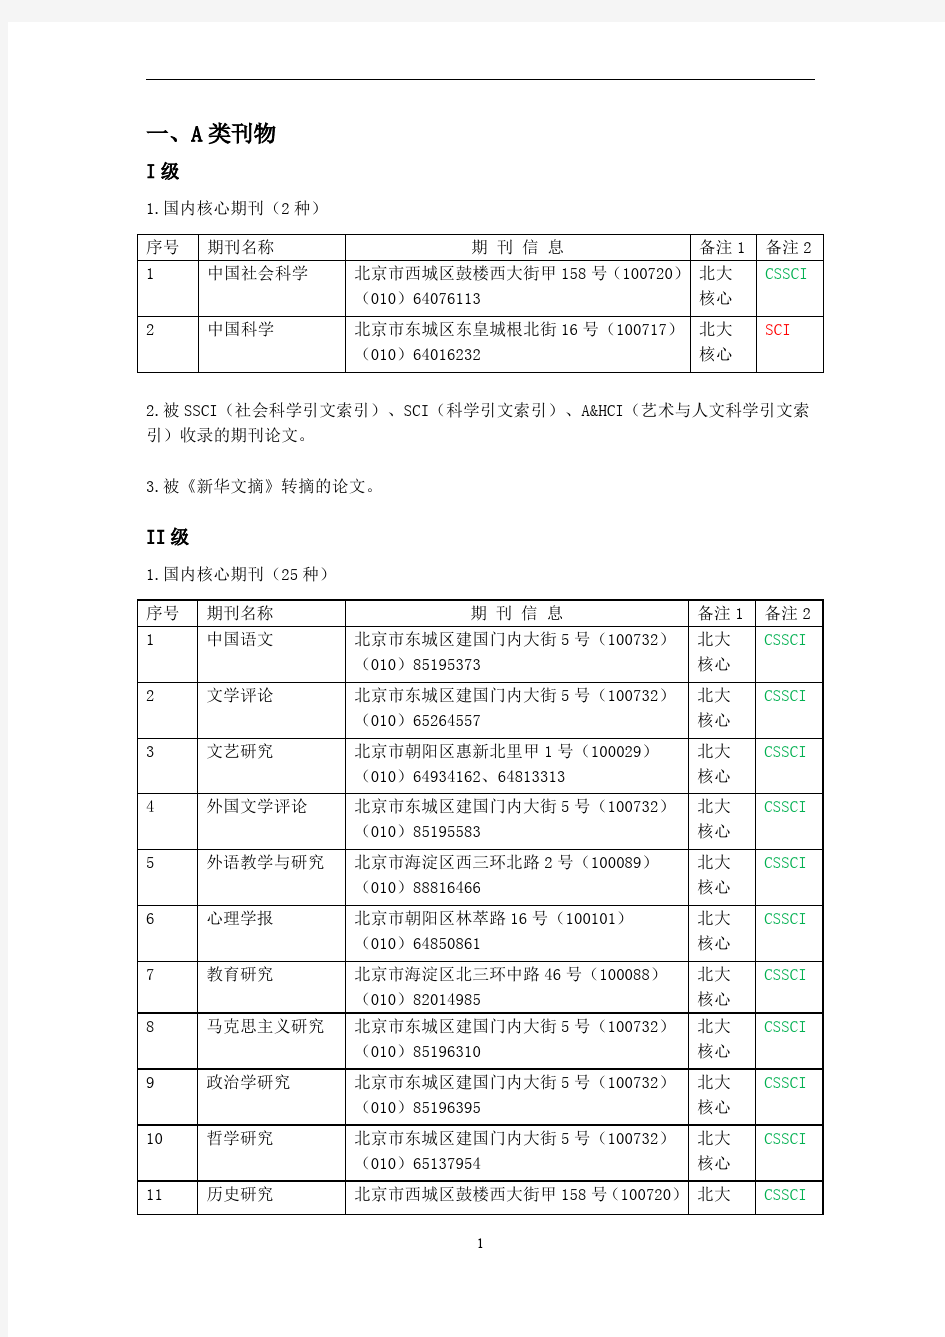 北京语言大学学术刊物分类表(2014年修订)